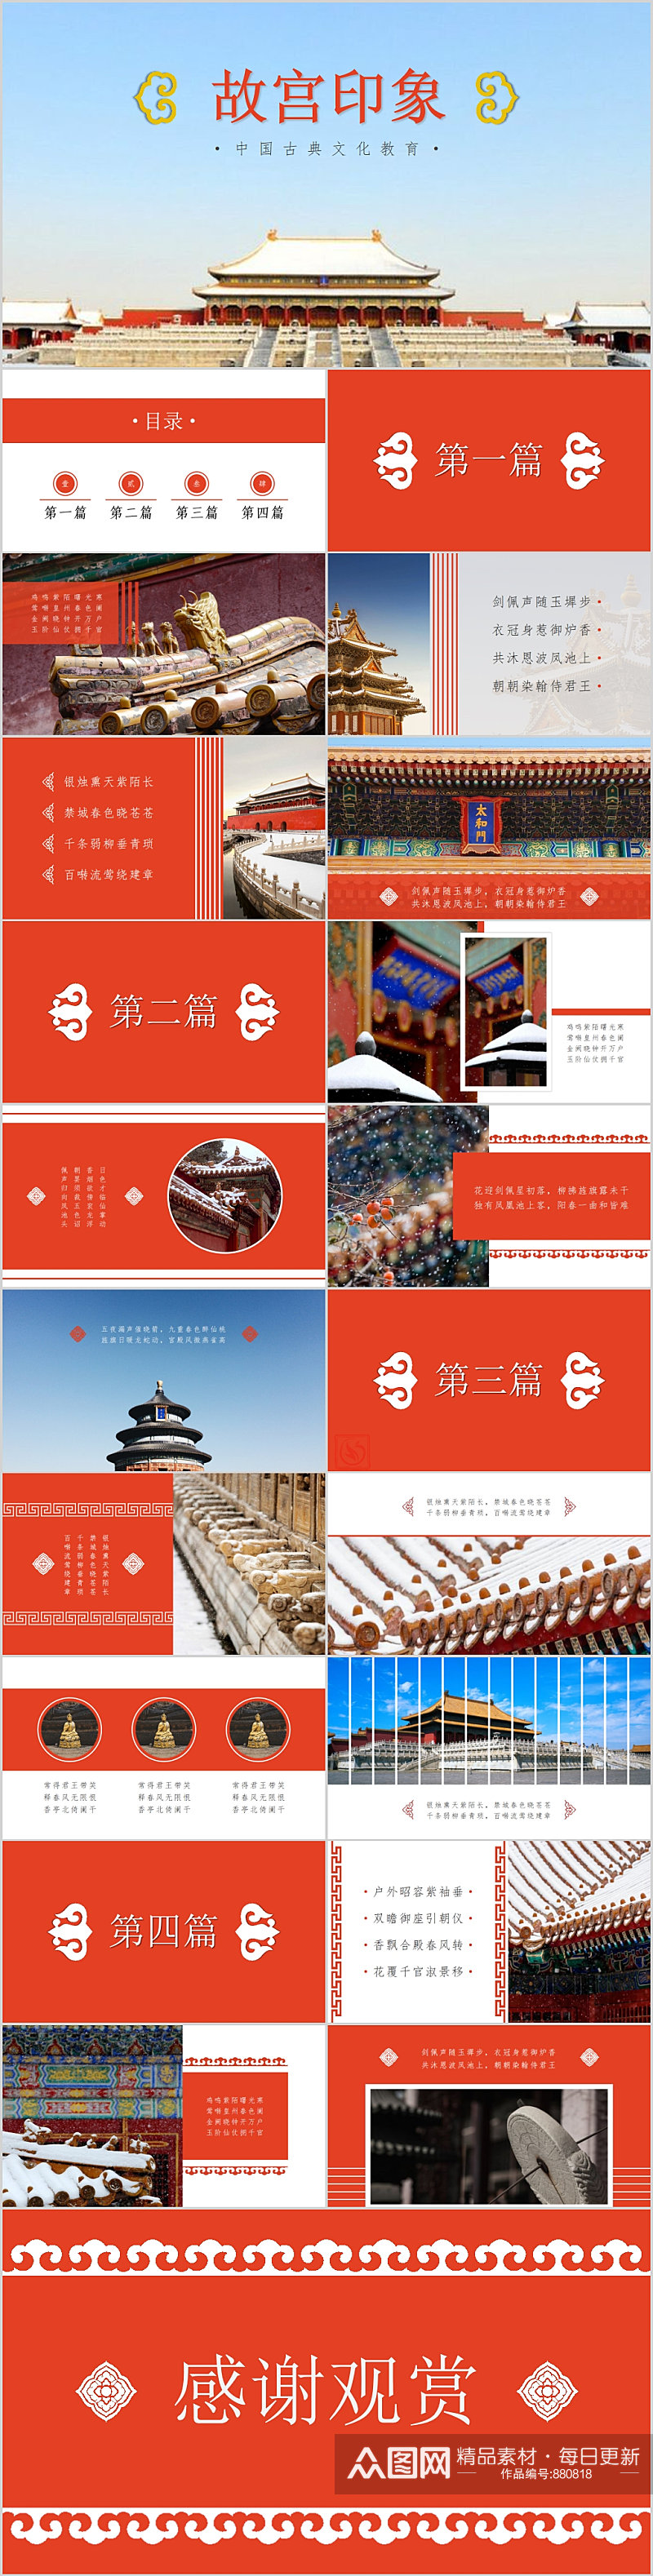 故宫印象中国古典文化教育PPT素材